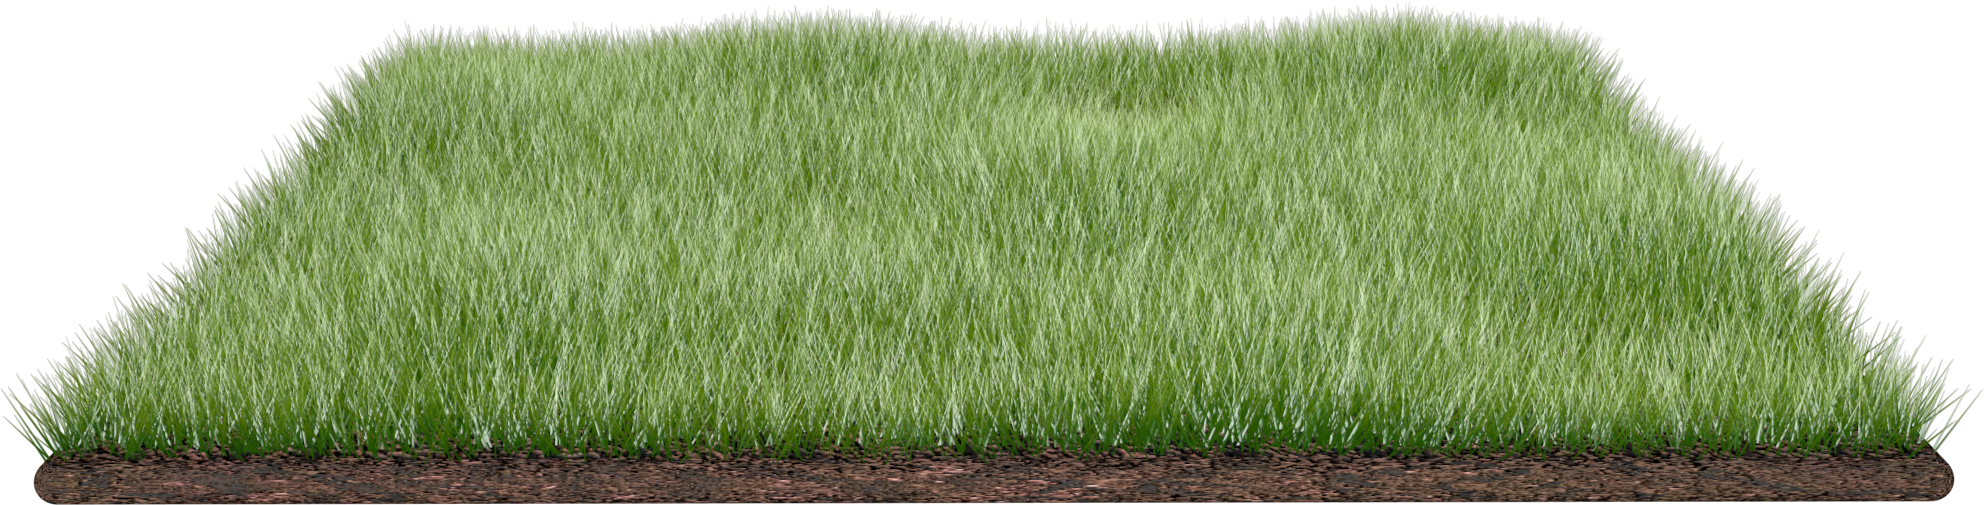 Grass Field Png By Dabbex30 Grass Field Png By Dabbex30 - Piece Of Grass (2000x1500)